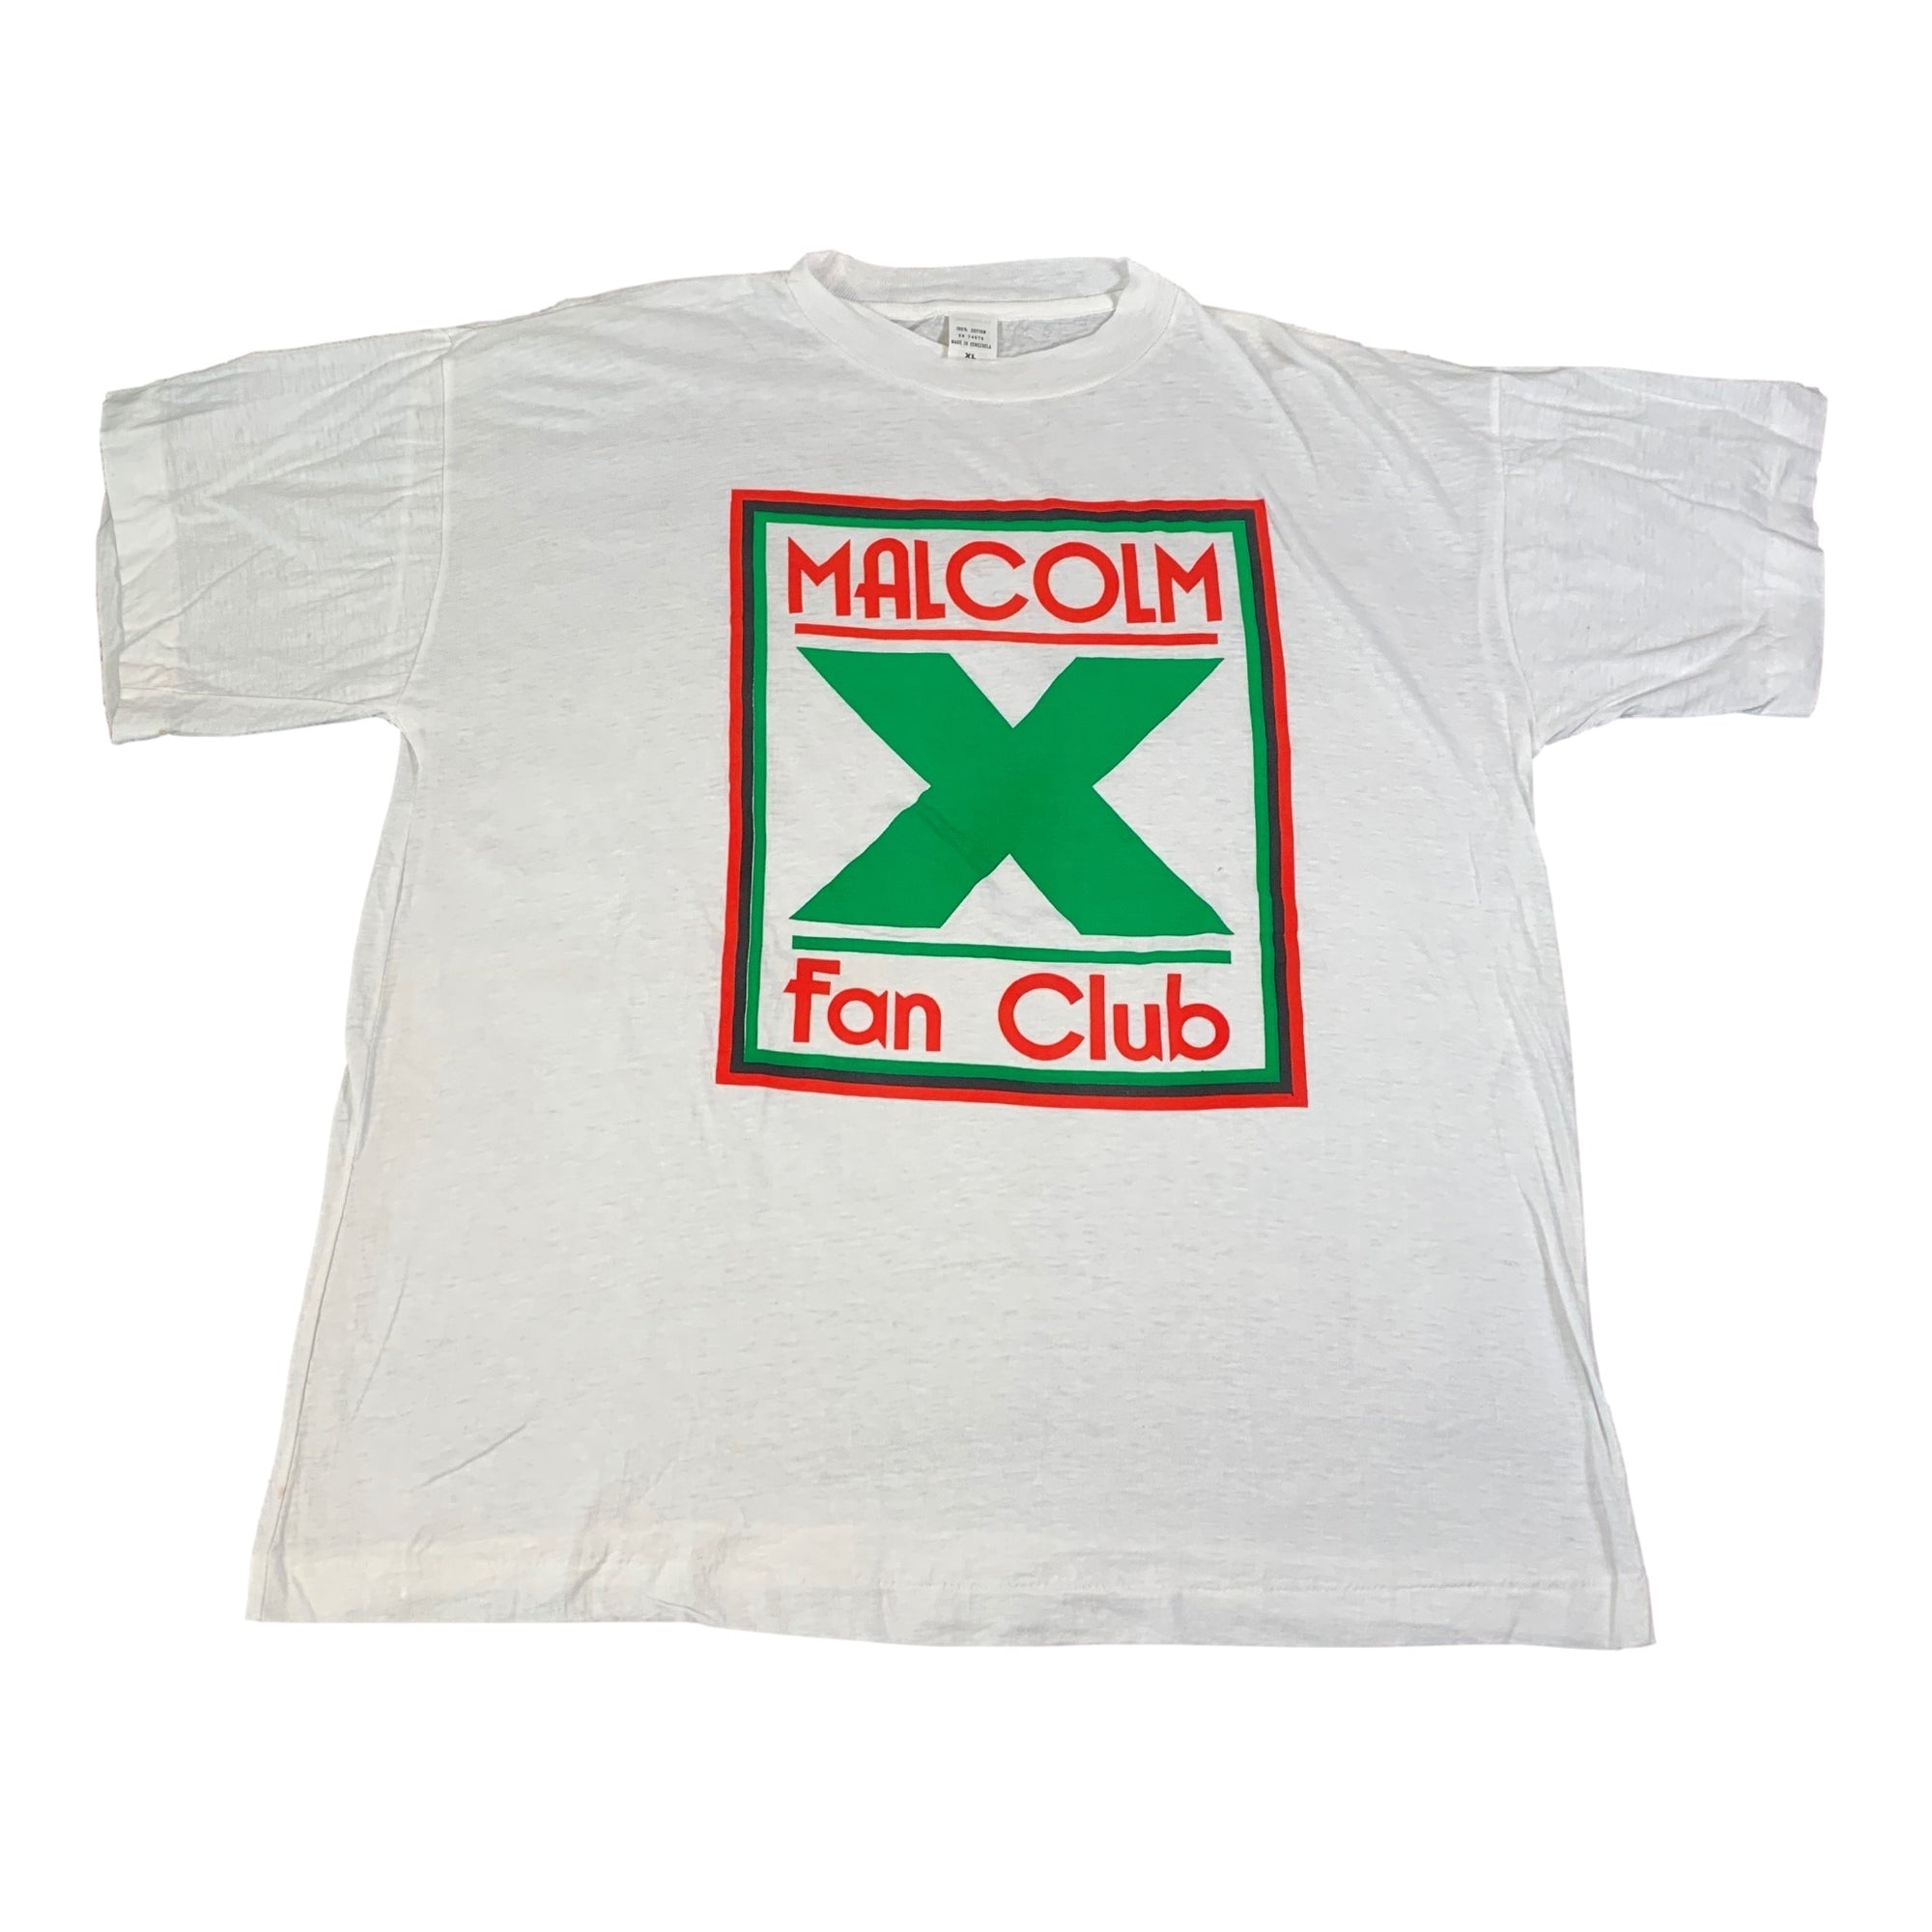 Vintage Malcolm X "Fan Club" T-Shirt - jointcustodydc